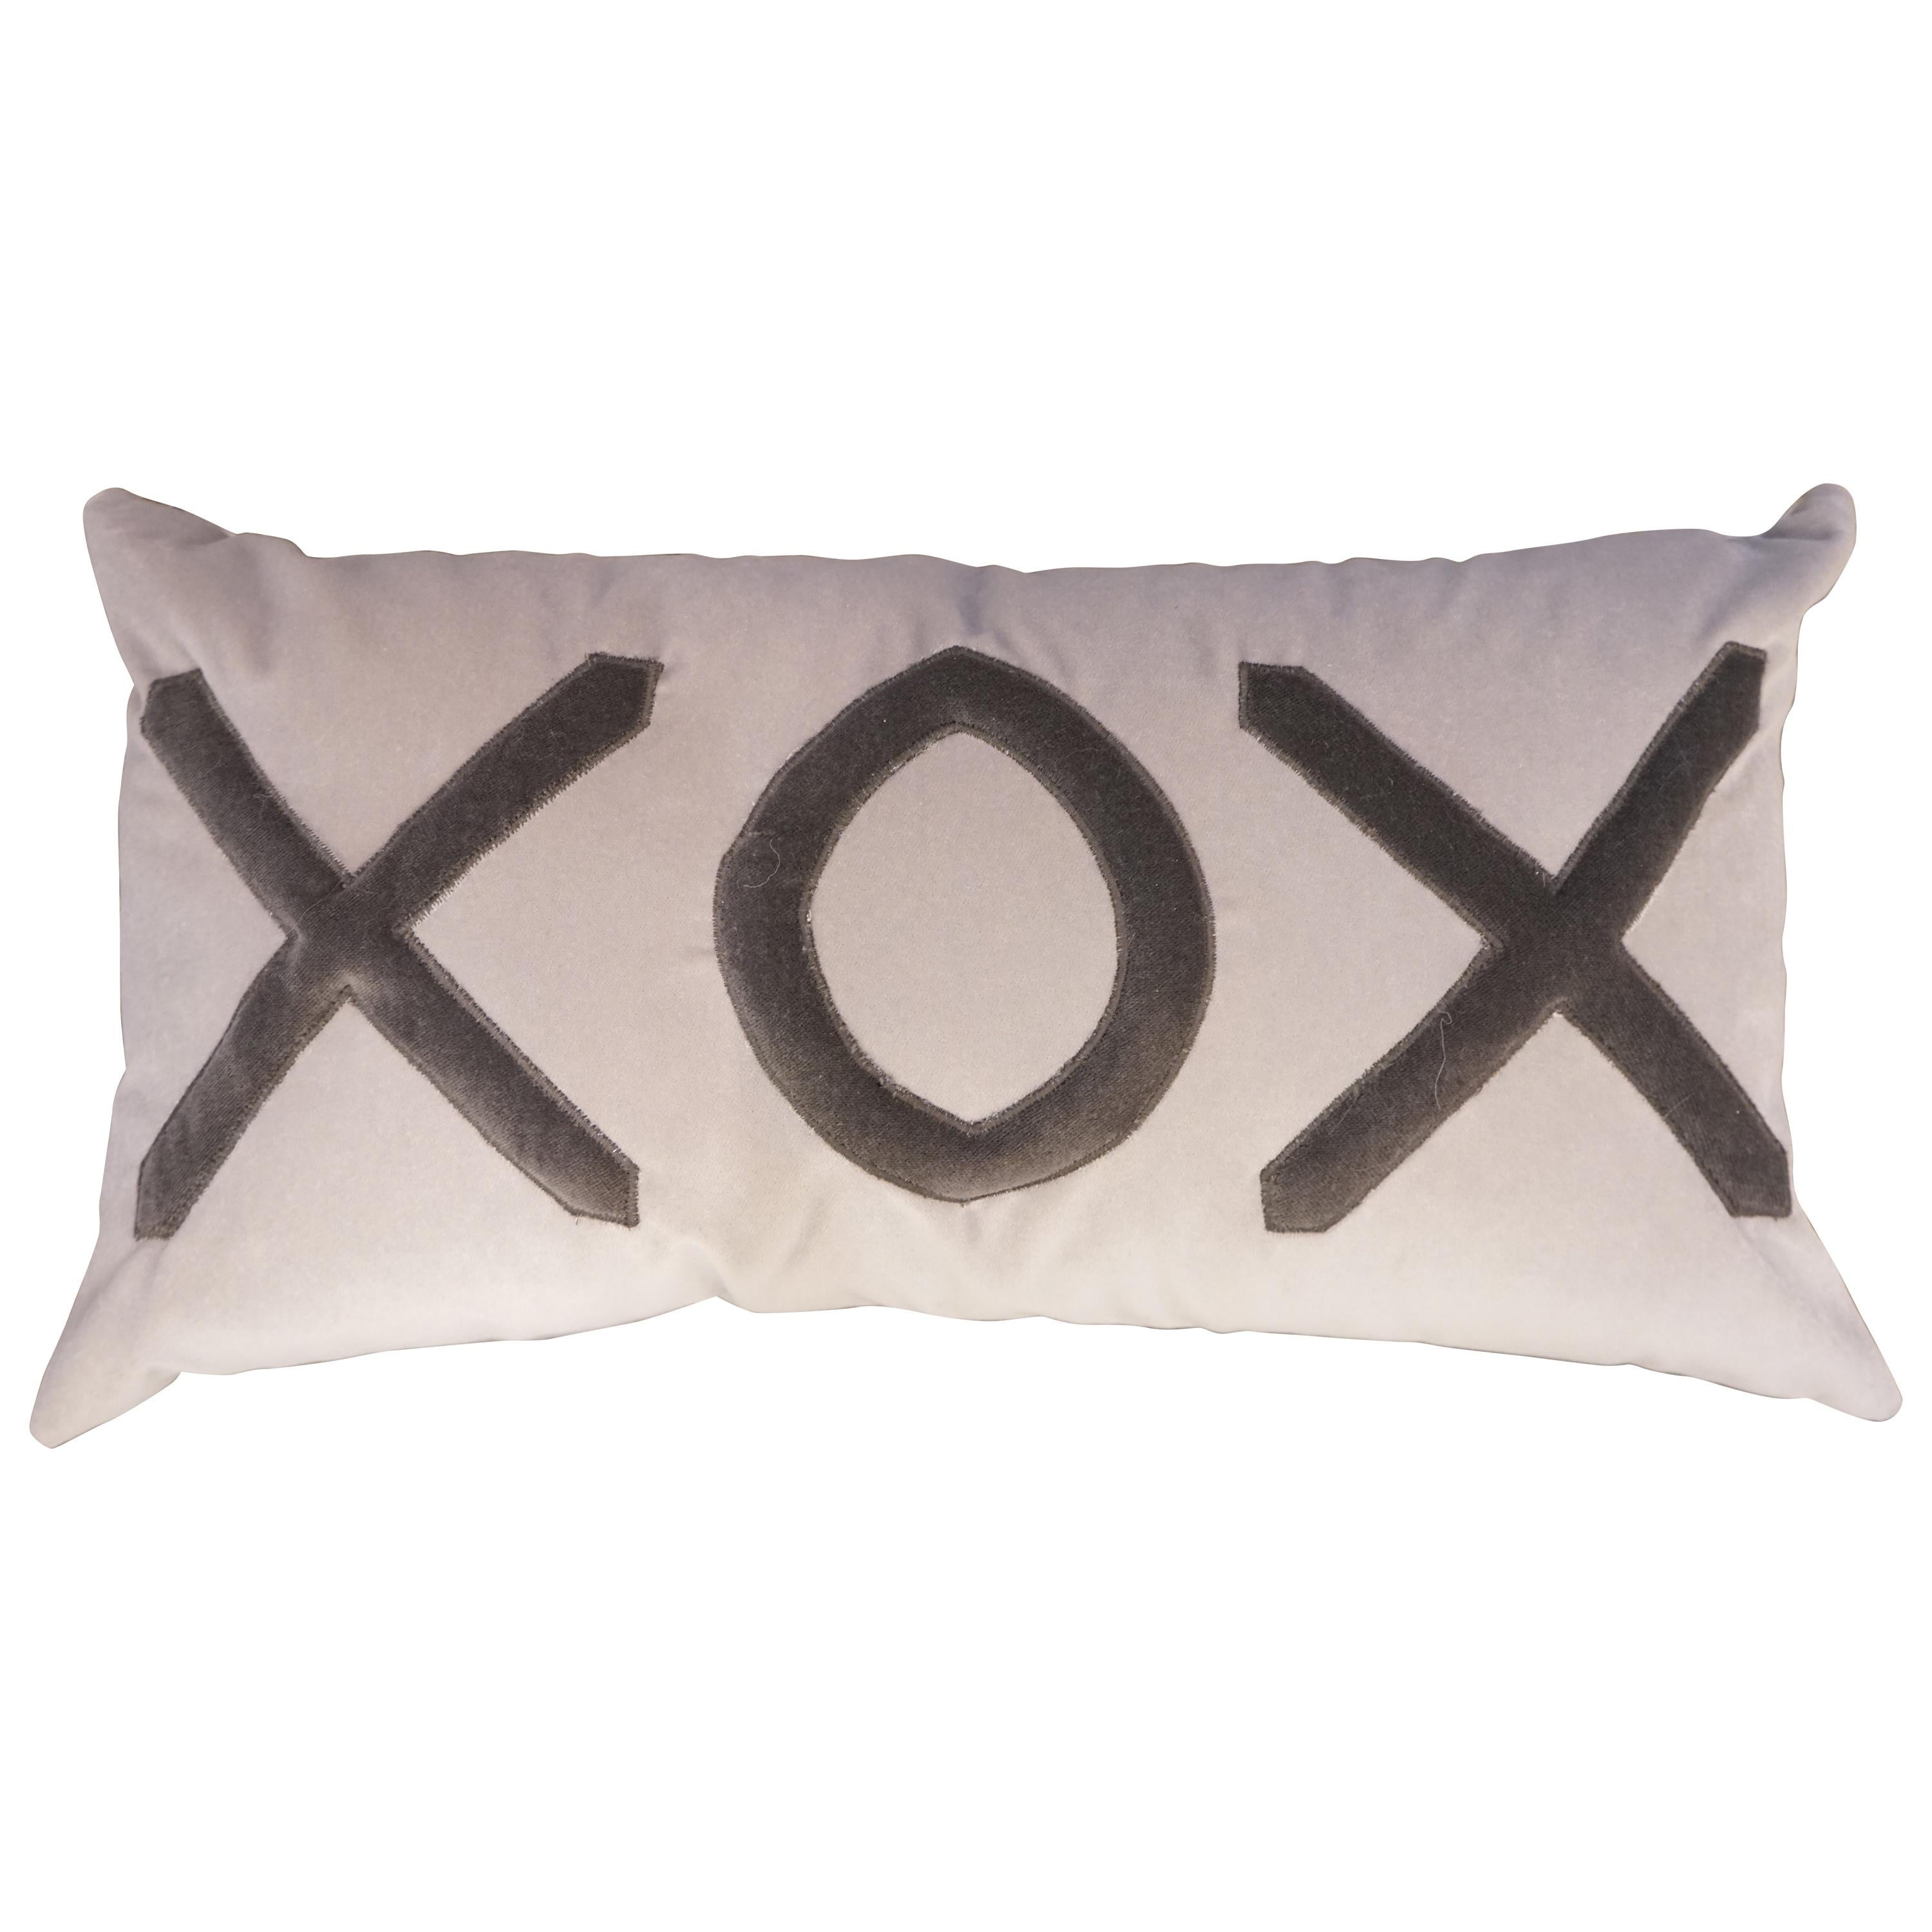 Contemporary American Grey Velvet XOX Pillow